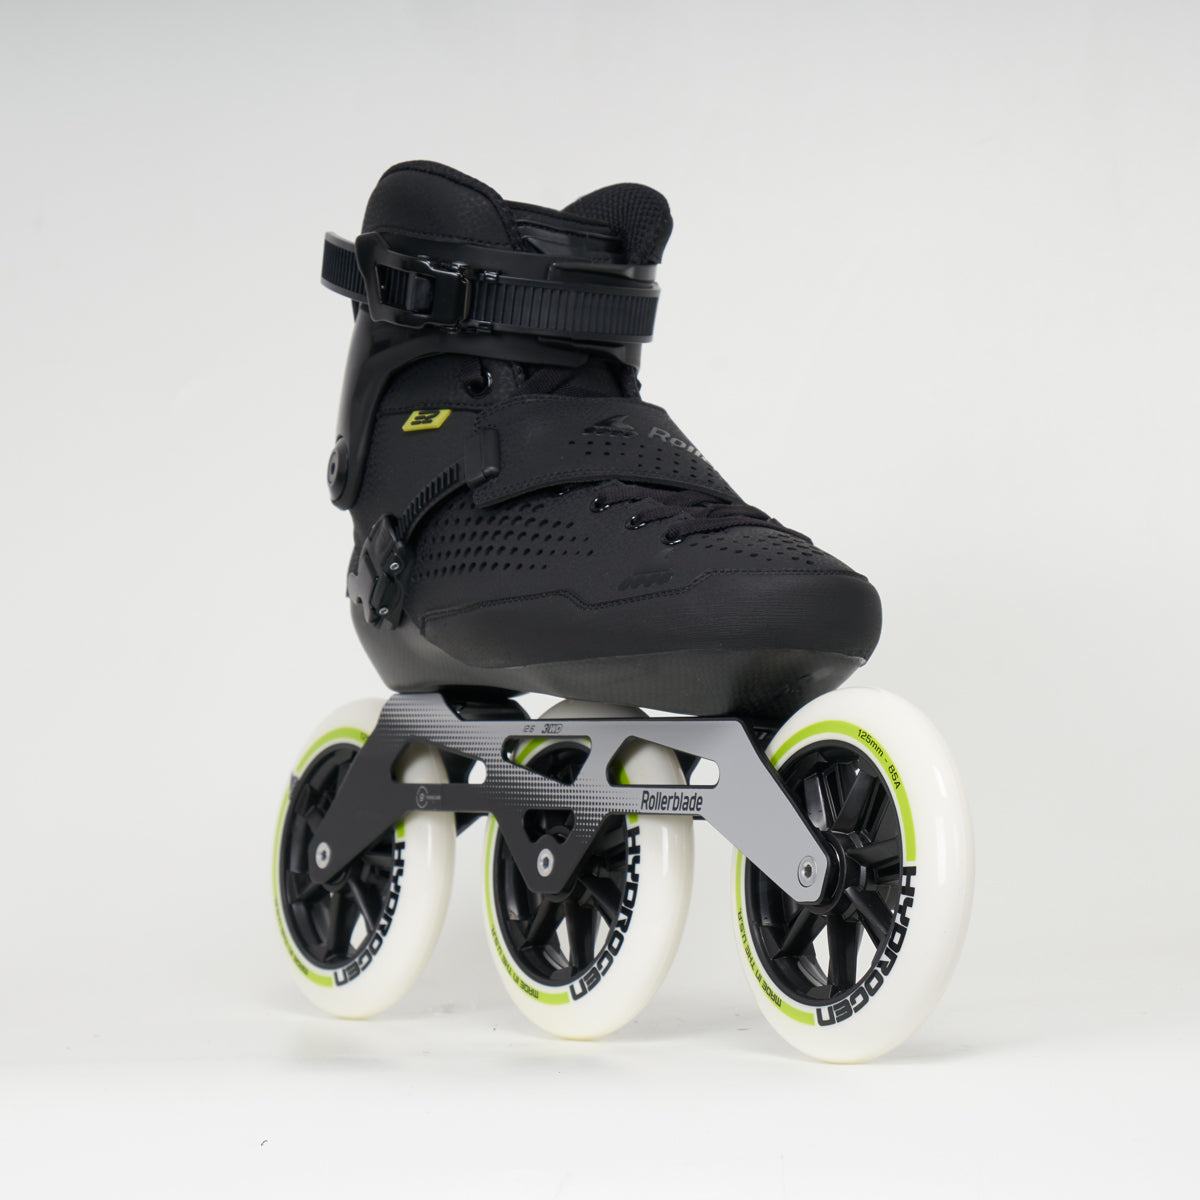 Rollerblade E2 Pro 125 Skates